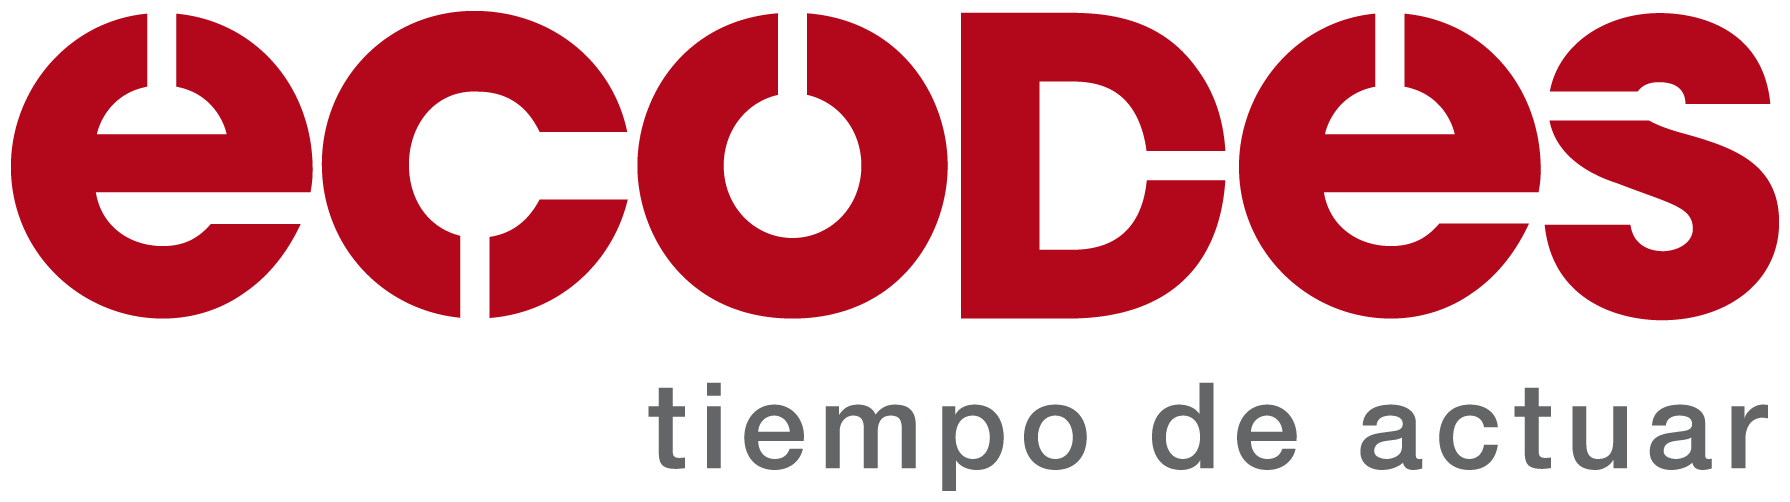 ECODES logo